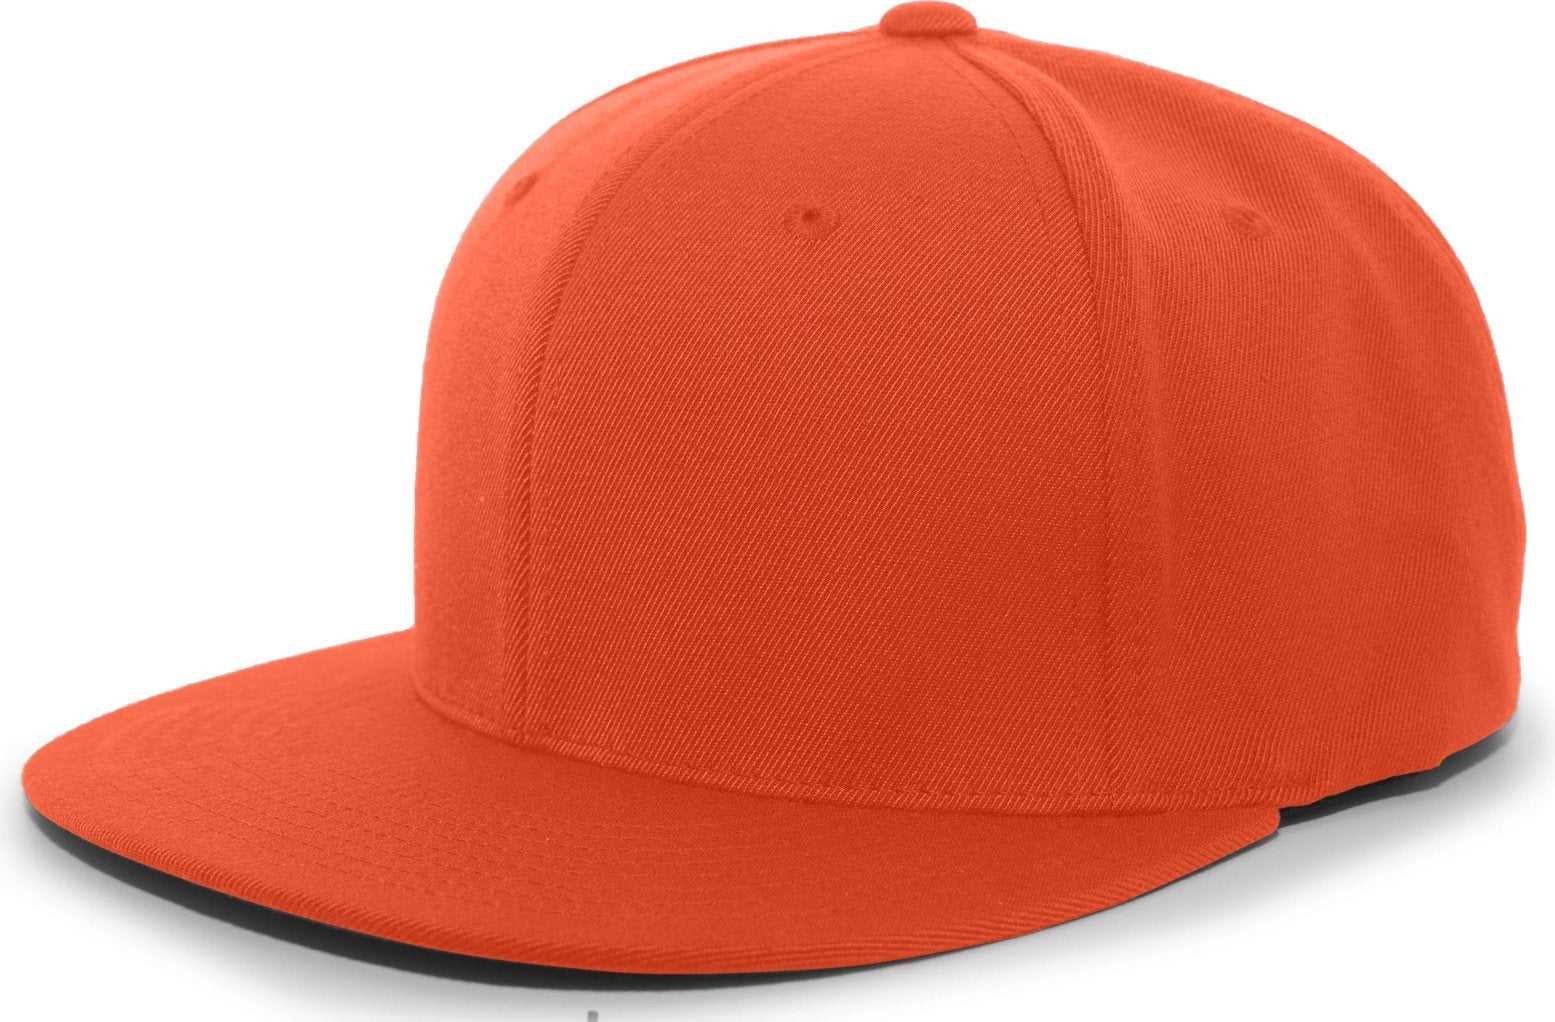 Pacific Headwear 8D5 A/C?ý Performance D-Series Flexfit Cap - Orange - HIT a Double